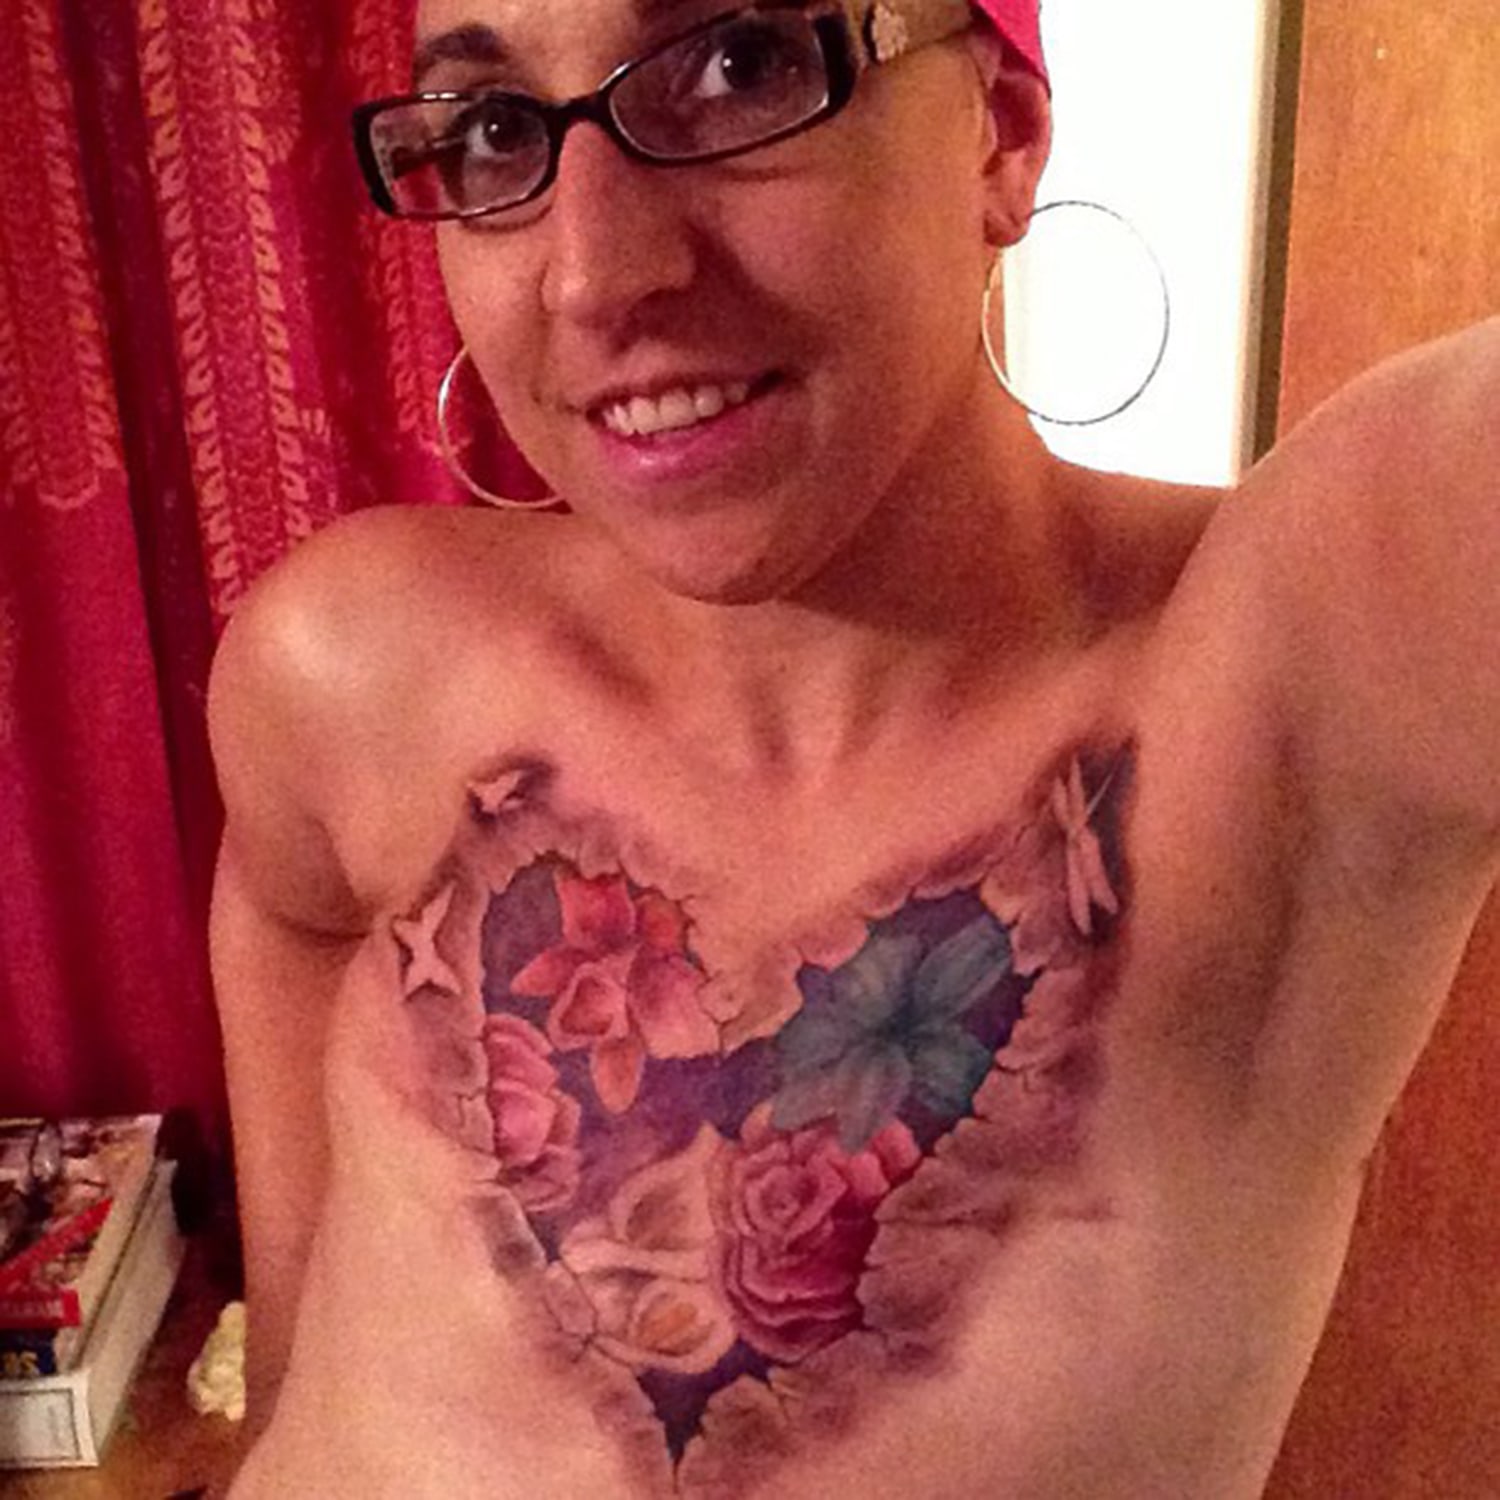 Pink Ink Tattoo - Medical Tattooing, Areola Tattoo, Nipple Tattoo